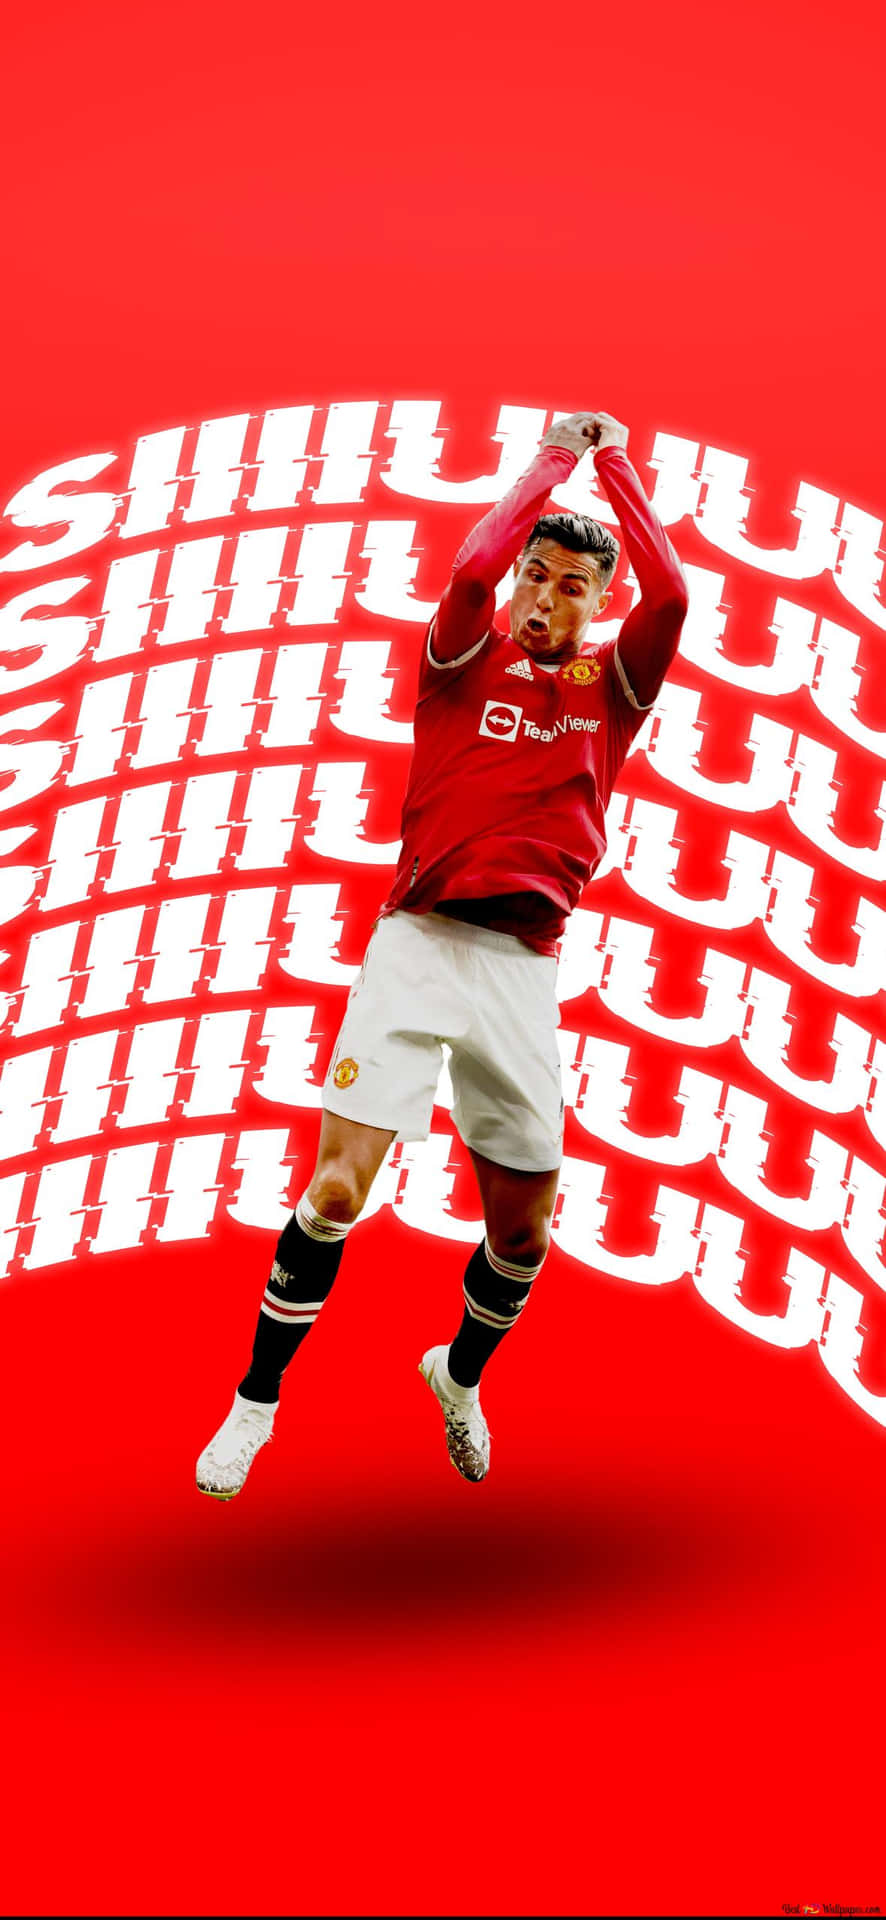 Derstolz Von Manchester United - Die Roten Teufel Wallpaper